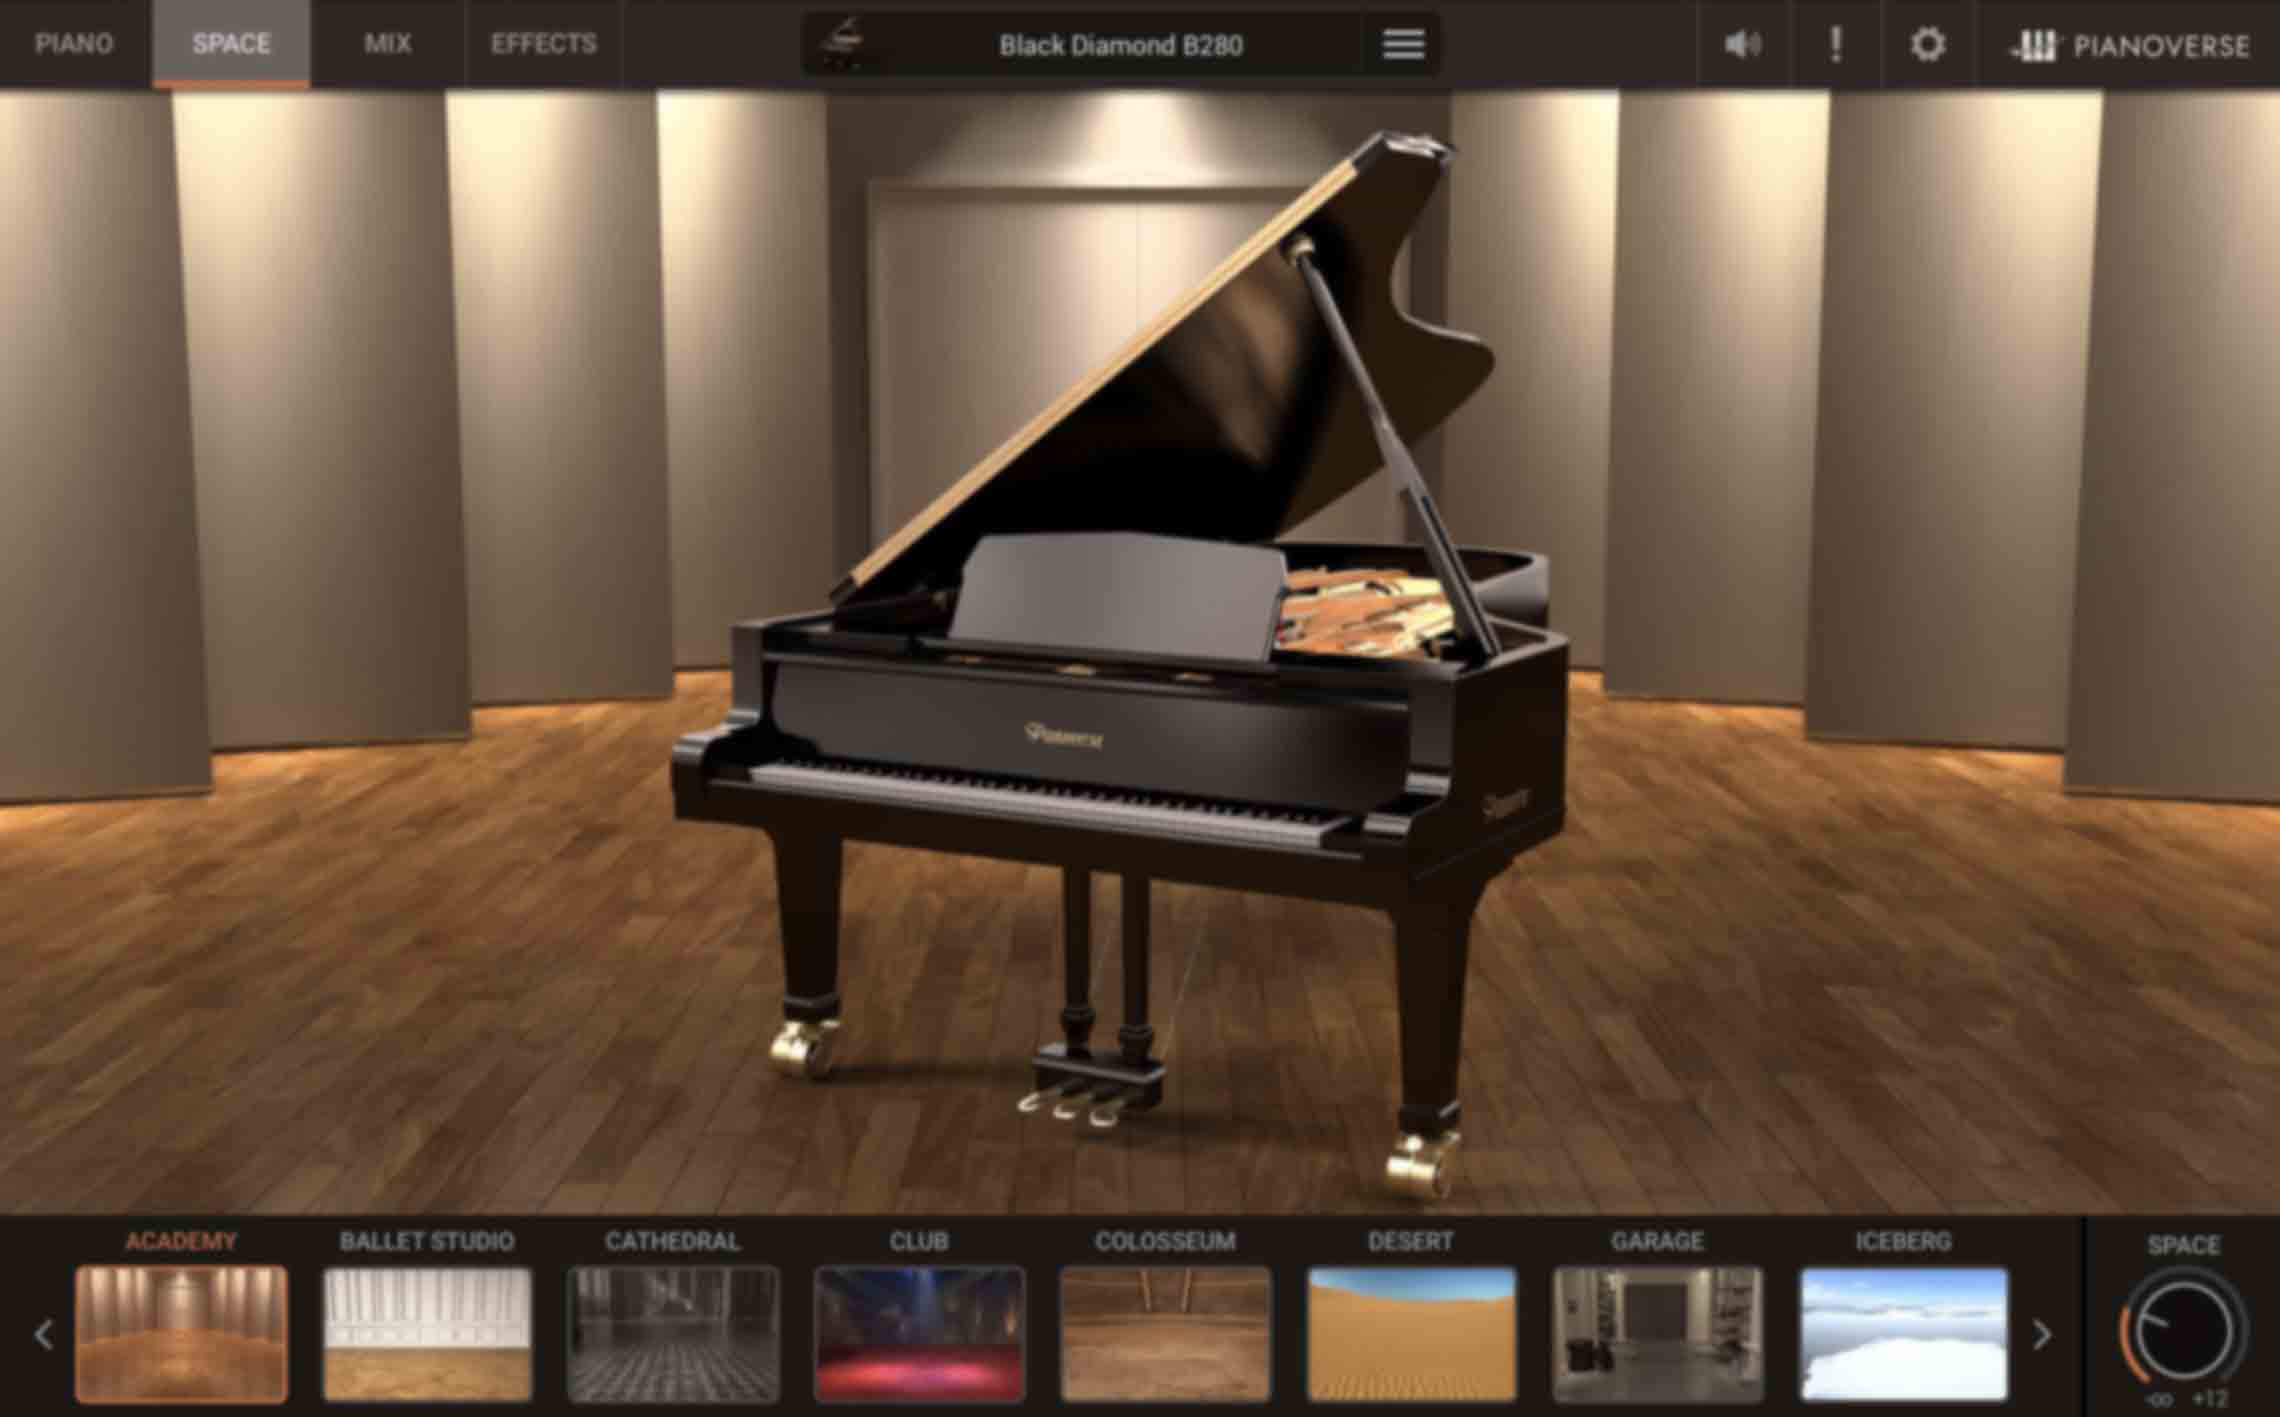 Academia - Um quarto de madeira grande, quente e bem afinado, com reflexões rápidas e controladas, é o lugar ideal para começar a posicionar seu piano.